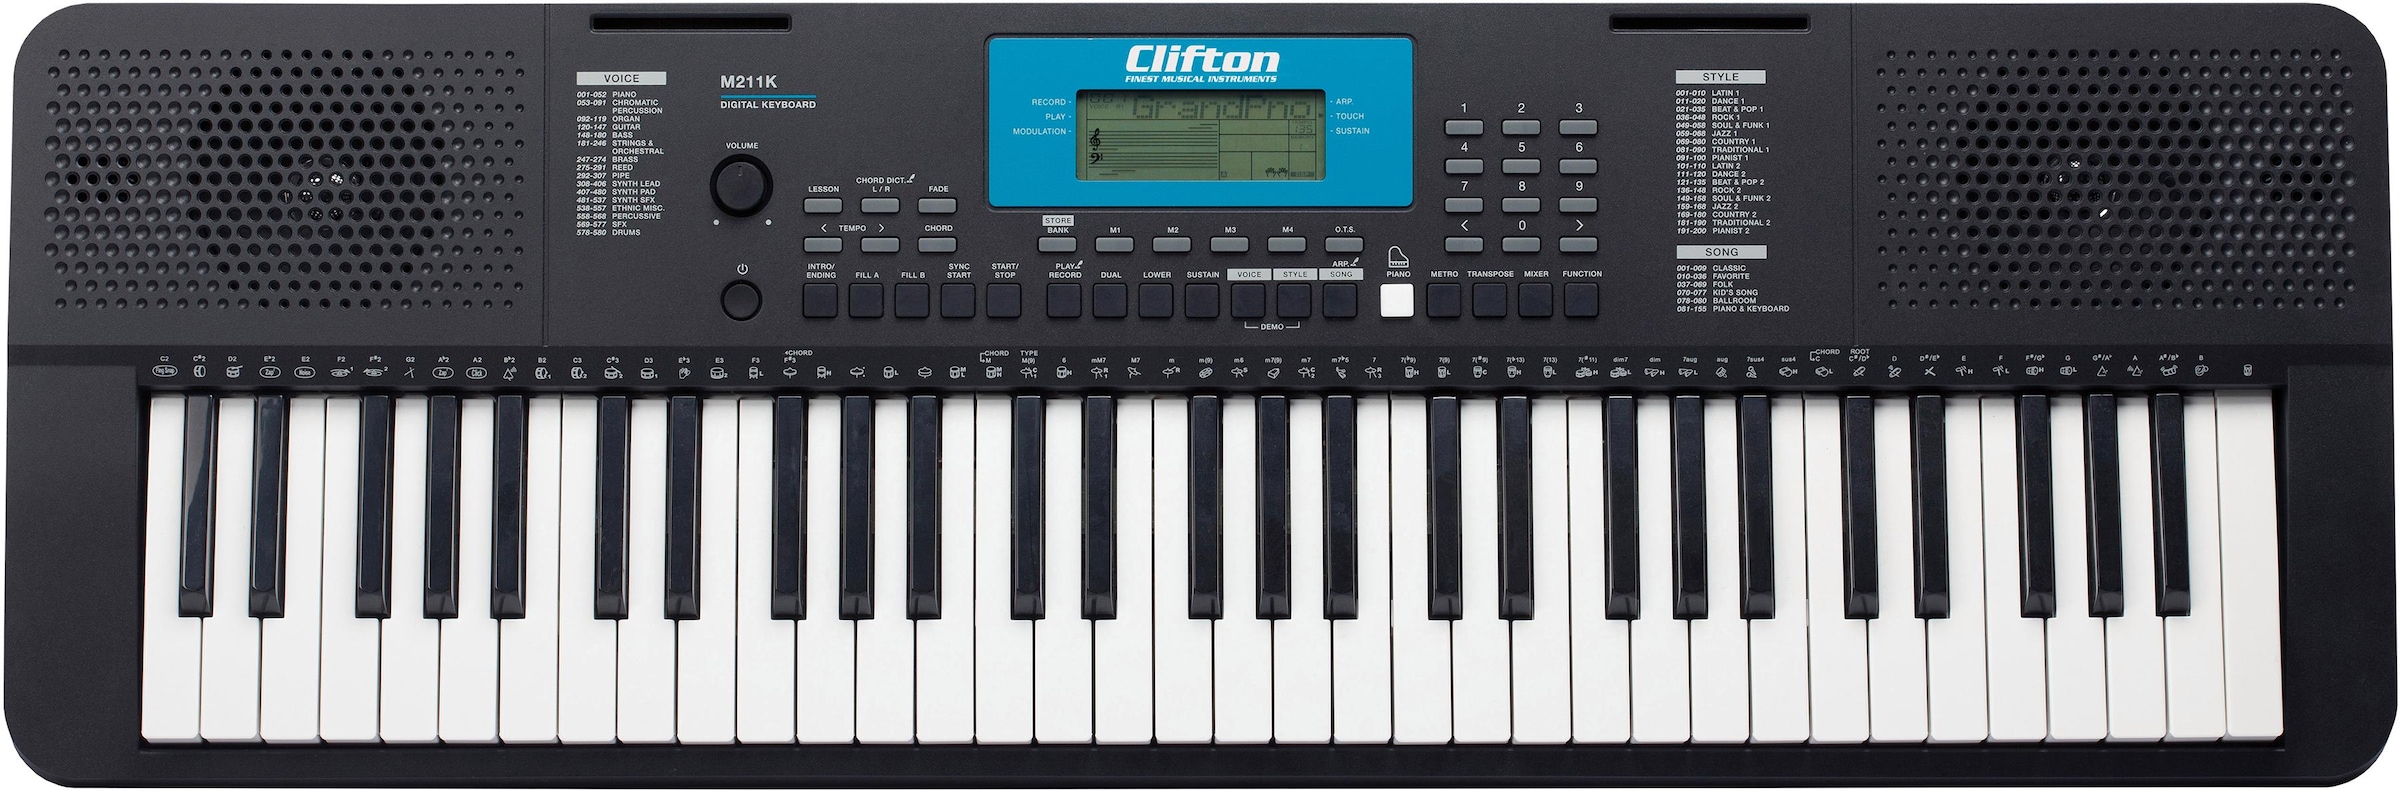 | OTTO »M211«, online kaufen verschiedenen 200 Schlagzeug Grooves Home-Keyboard Clifton mit